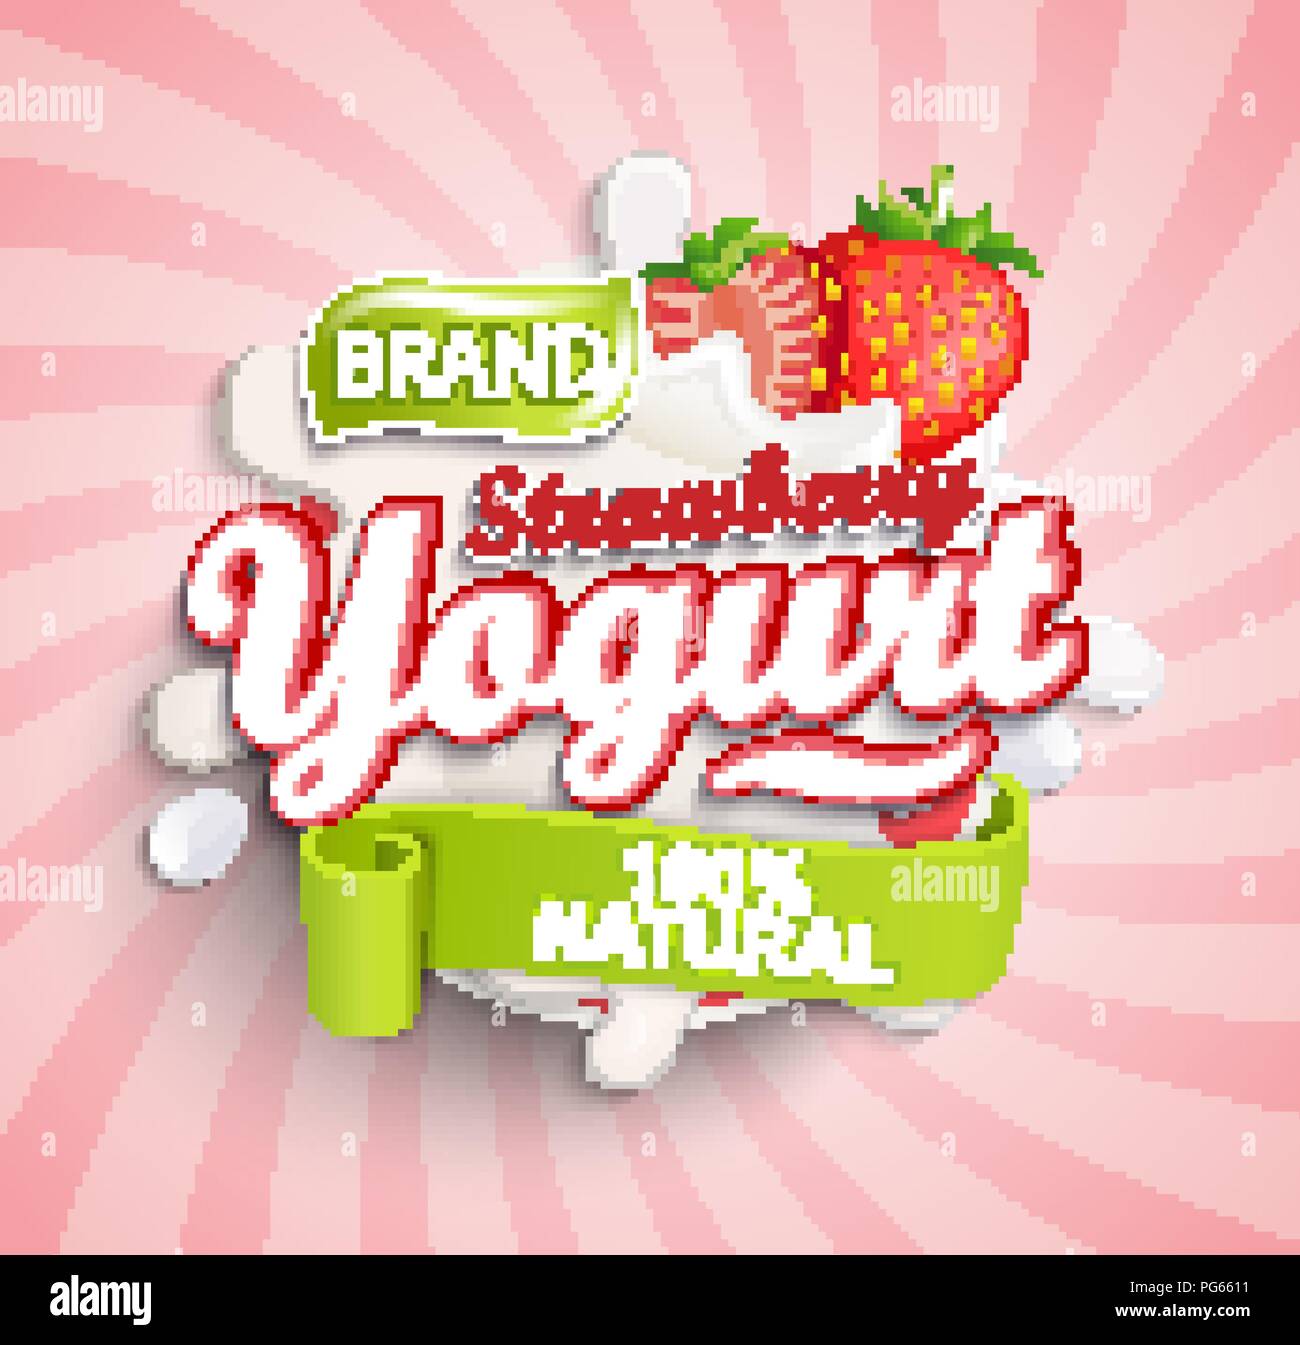 Naturali e freschi di yogurt alla fragola etichetta schizzi sul sunburst sfondo per il vostro marchio, logo, template, etichetta, emblema per negozi di generi alimentari, agricoltura memorizza, confezionamento e pubblicità. Illustrazione Vettoriale. Illustrazione Vettoriale